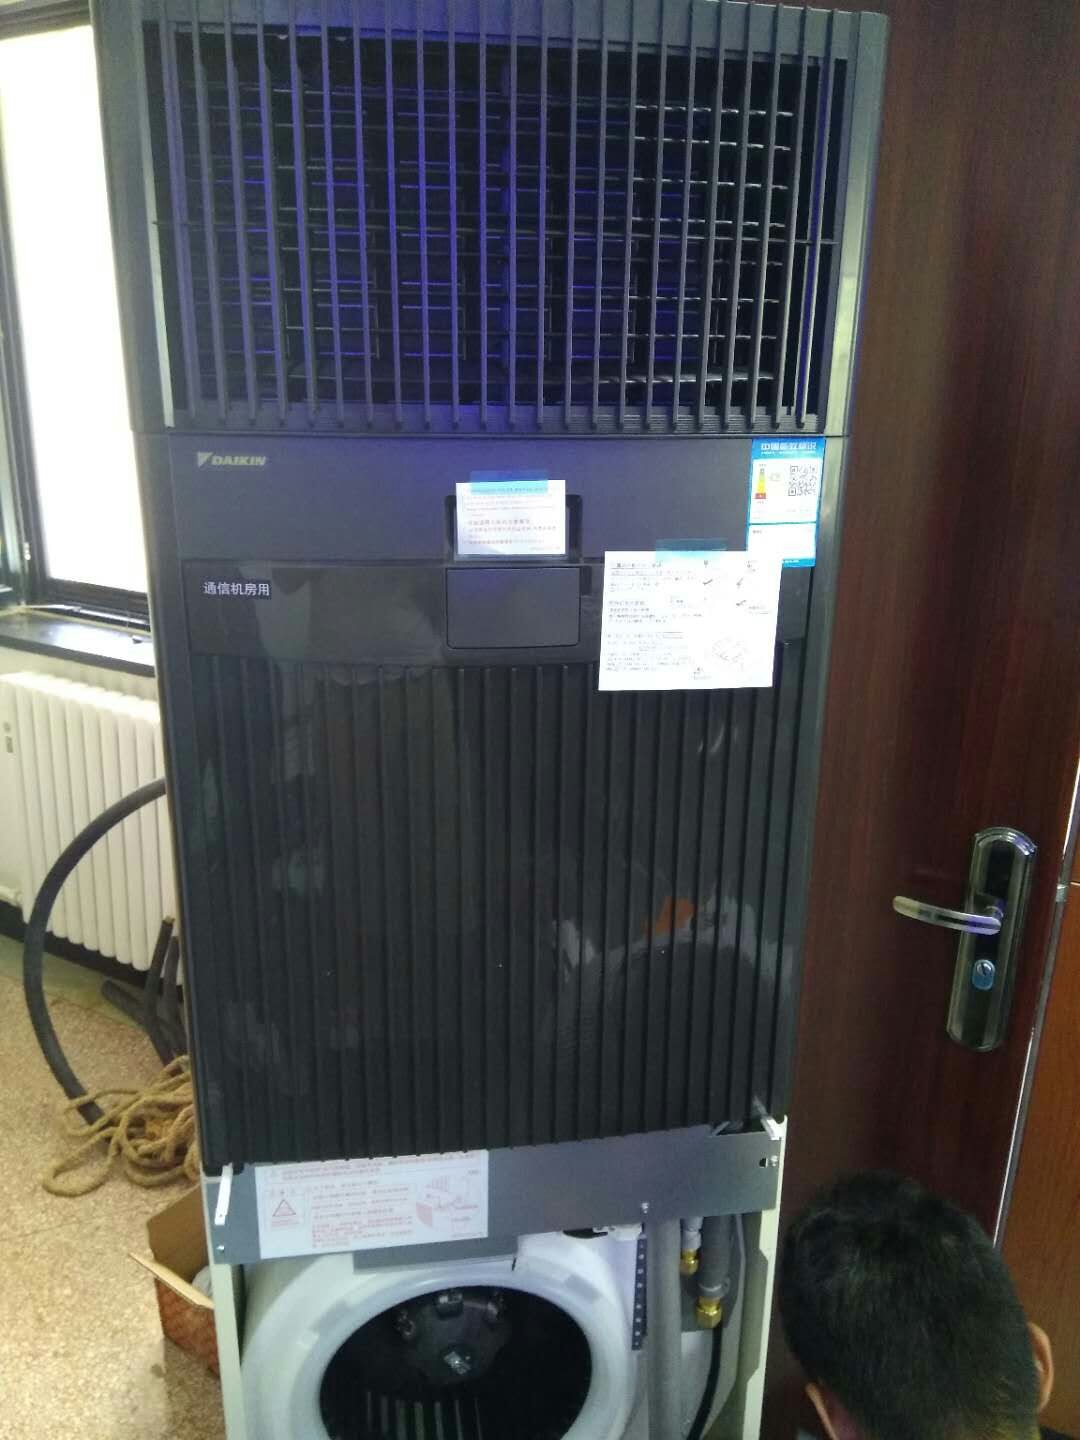 大金3P冷暖定频机房空调 豪华柜机FNVQ203AAKD报价/参数